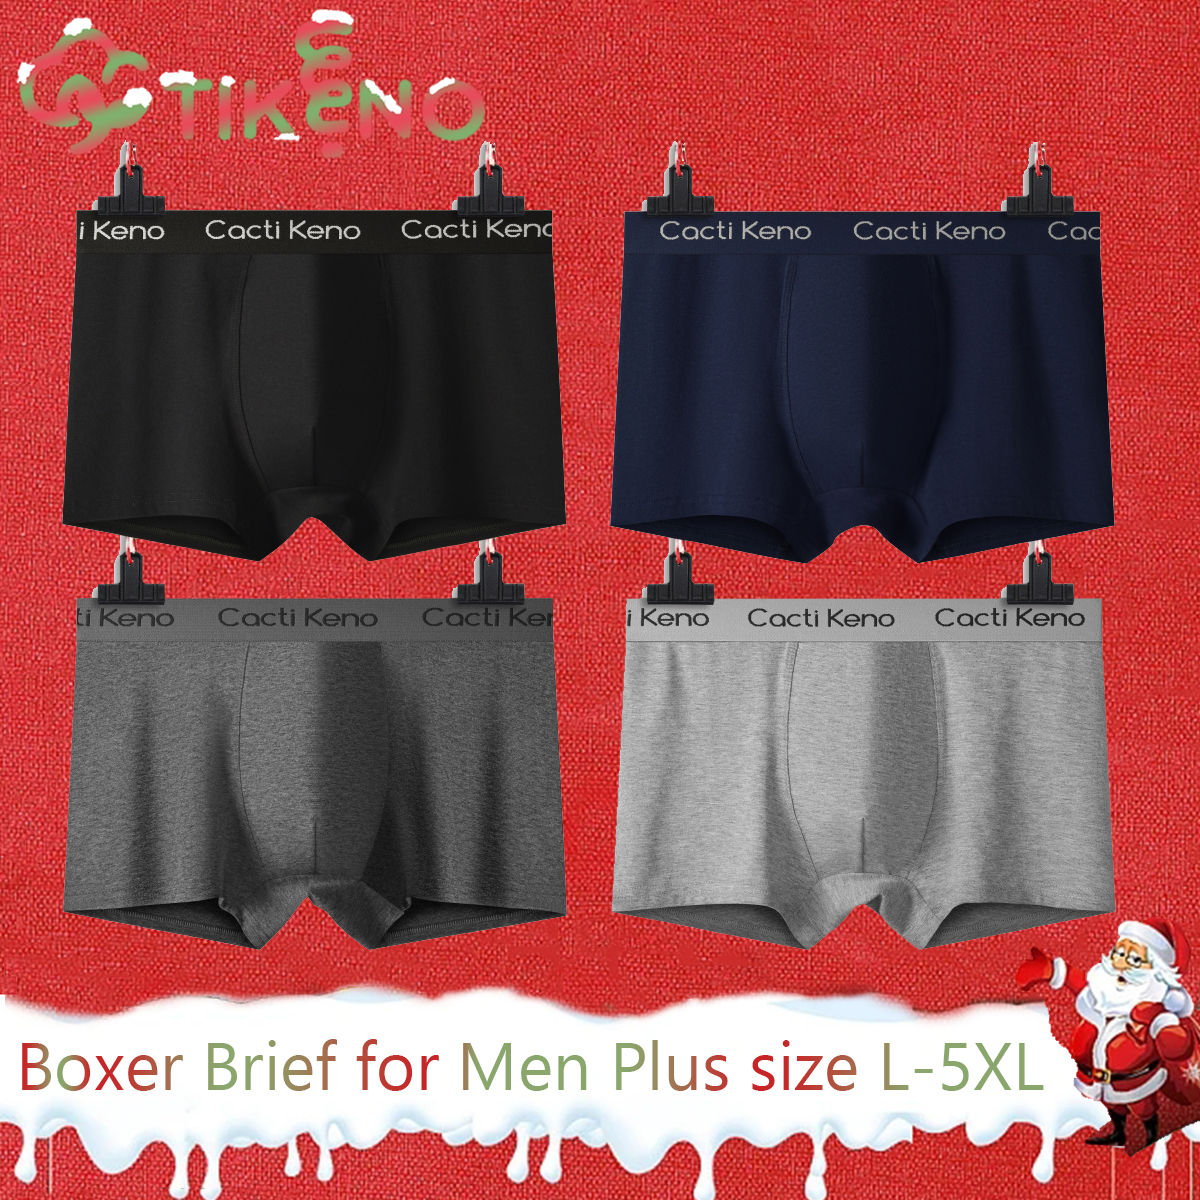 4Pcs Cacti Keno Stretch Cotton Briefs For Men Spandex Briefs Breathable  plus size L-5XL high quality underwear for men